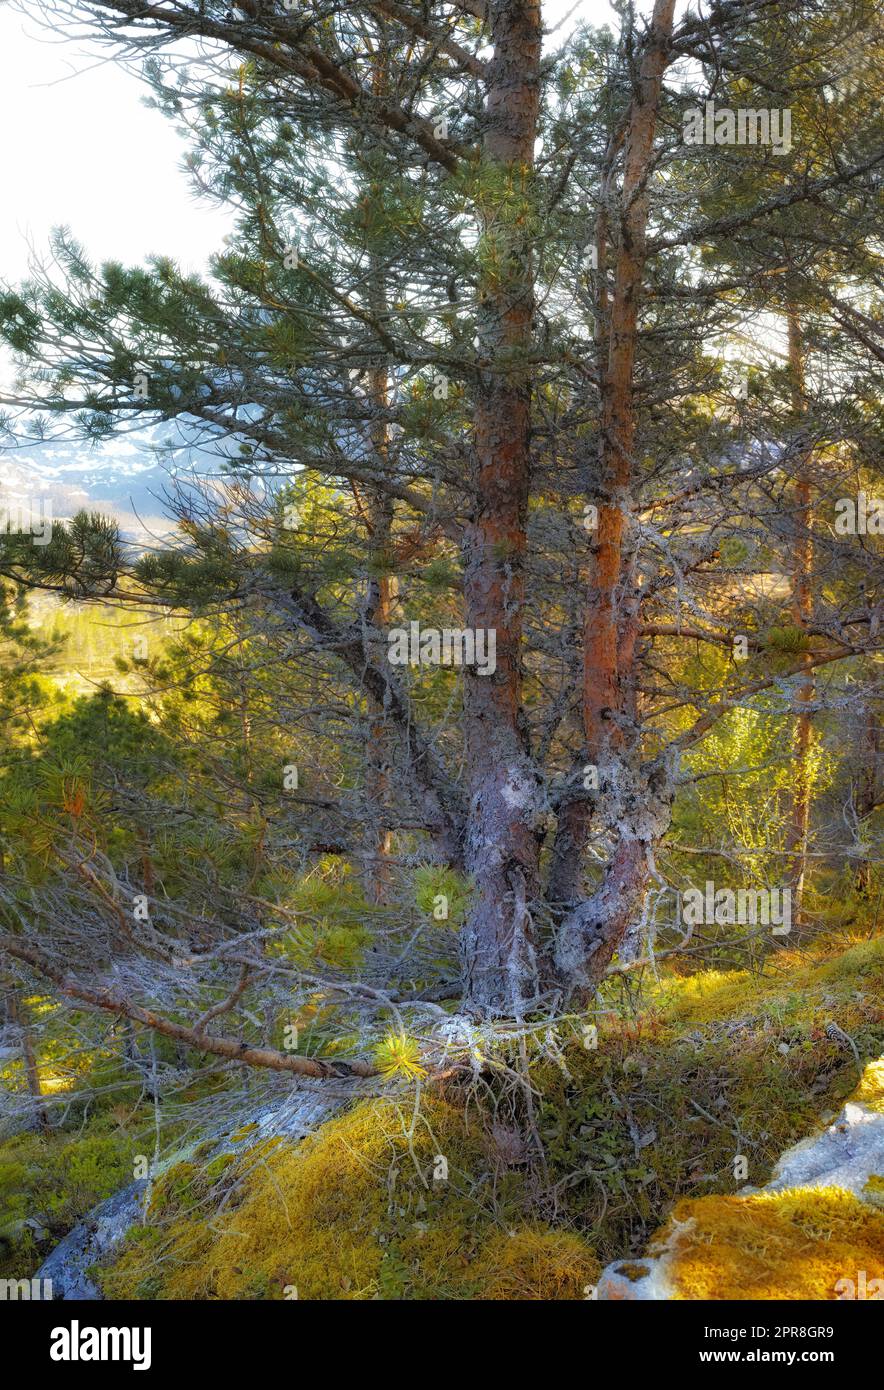 Üppige felsige Wildnis mit wilden Bäumen und Sträuchern in Bodo, Nordland, Noway. Malerische natürliche Landschaft mit Holzstruktur aus alter Rinde in einem abgelegenen und friedlichen Wald oder Wäldern zum Reisen und Erkunden Stockfoto